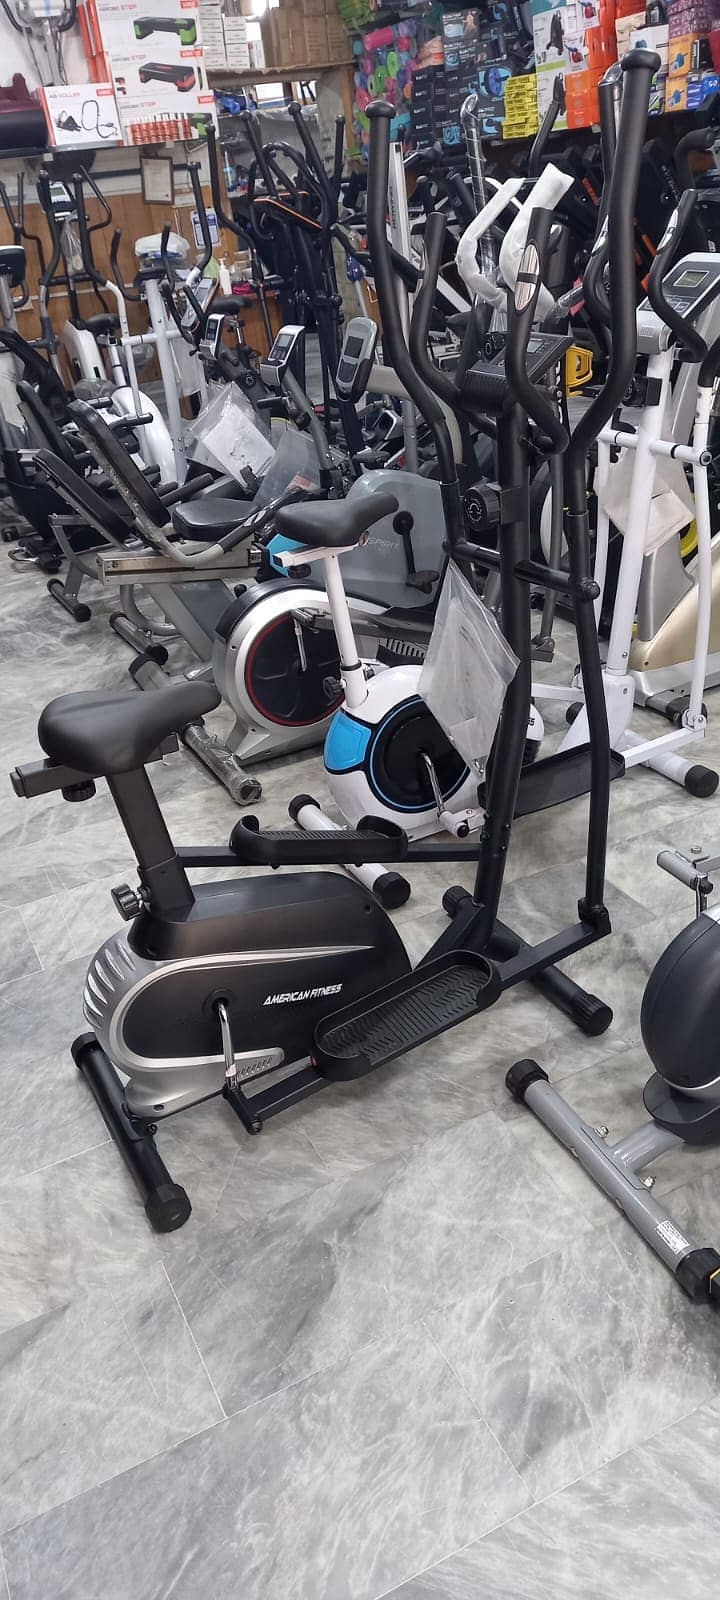 Exercise bike Elliptical Cros Trainer full body workout dumbbell plate 12